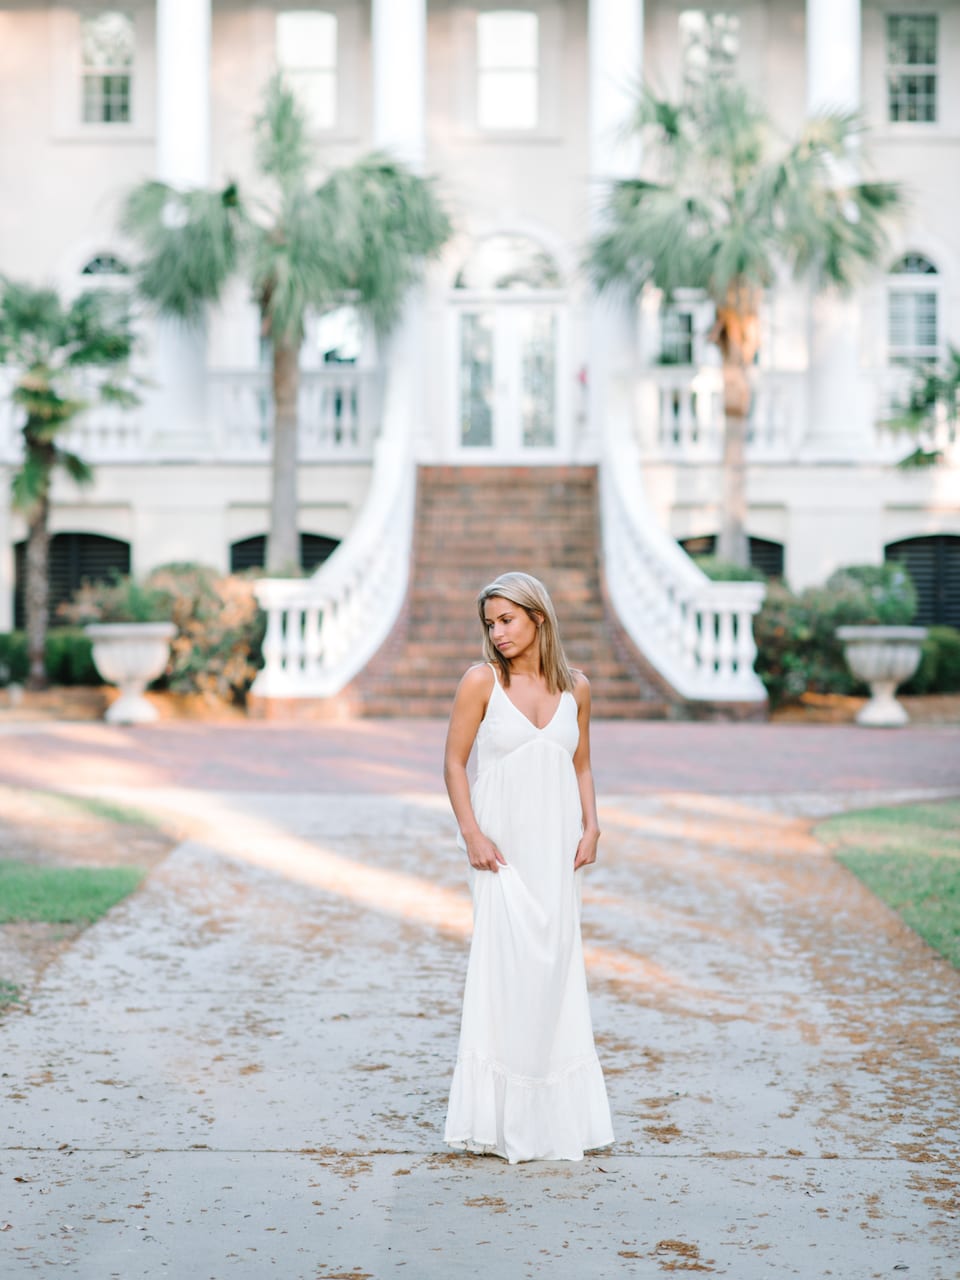 Simple White Maxi Dress Inspiration for Charleston, SC Senior Girls - Stunning White Dresses Ideas